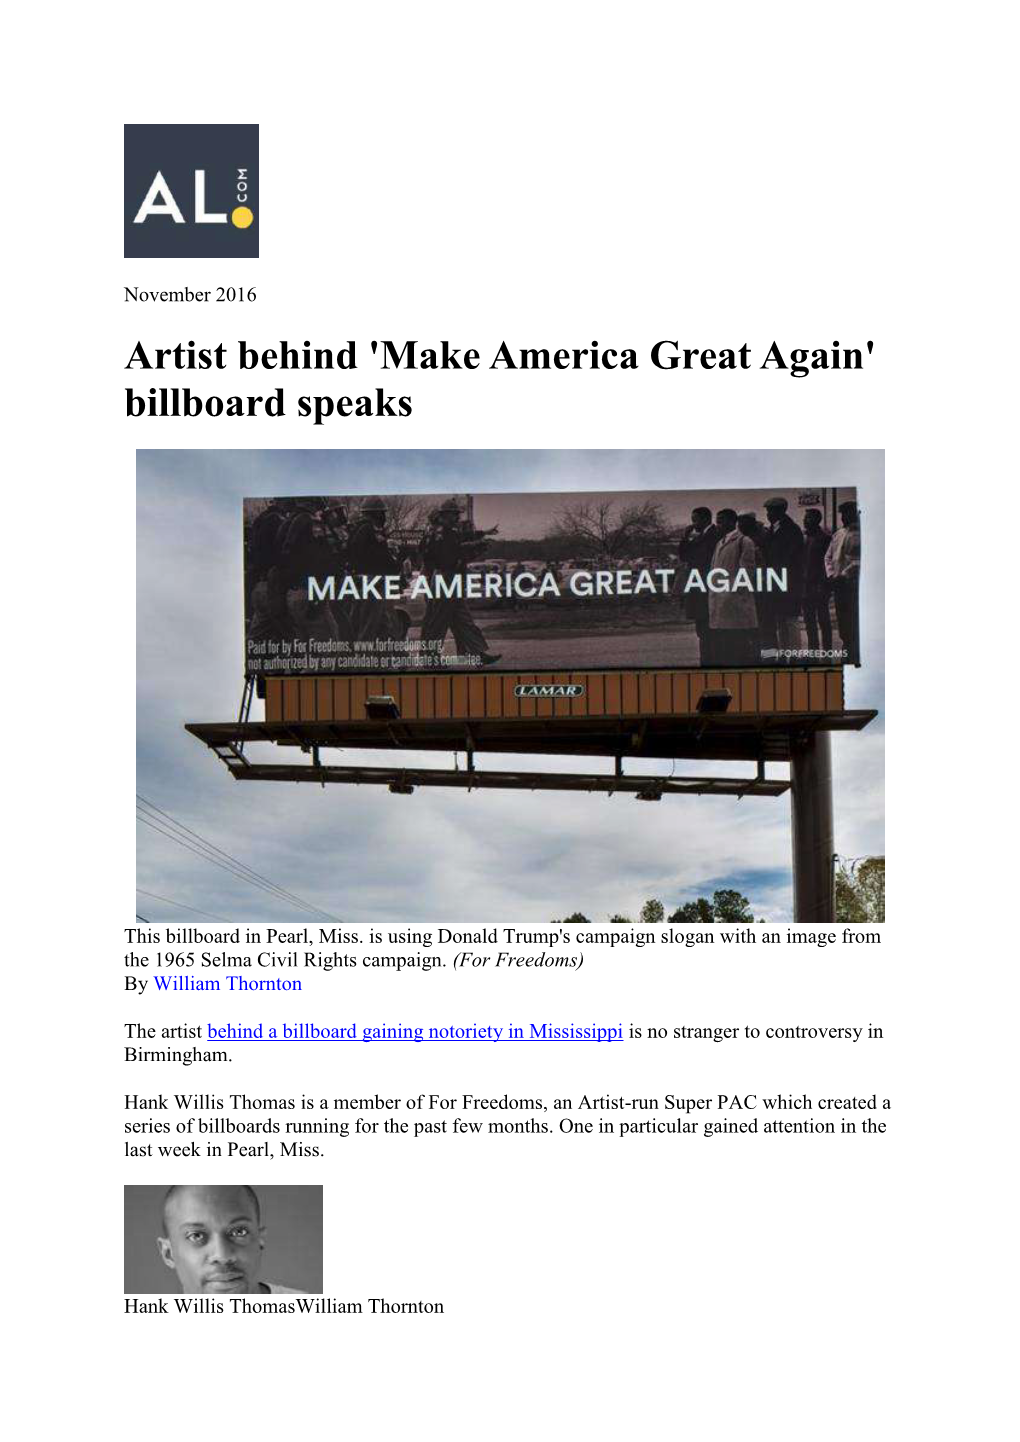 Artist Behind 'Make America Great Again' Billboard Speaks